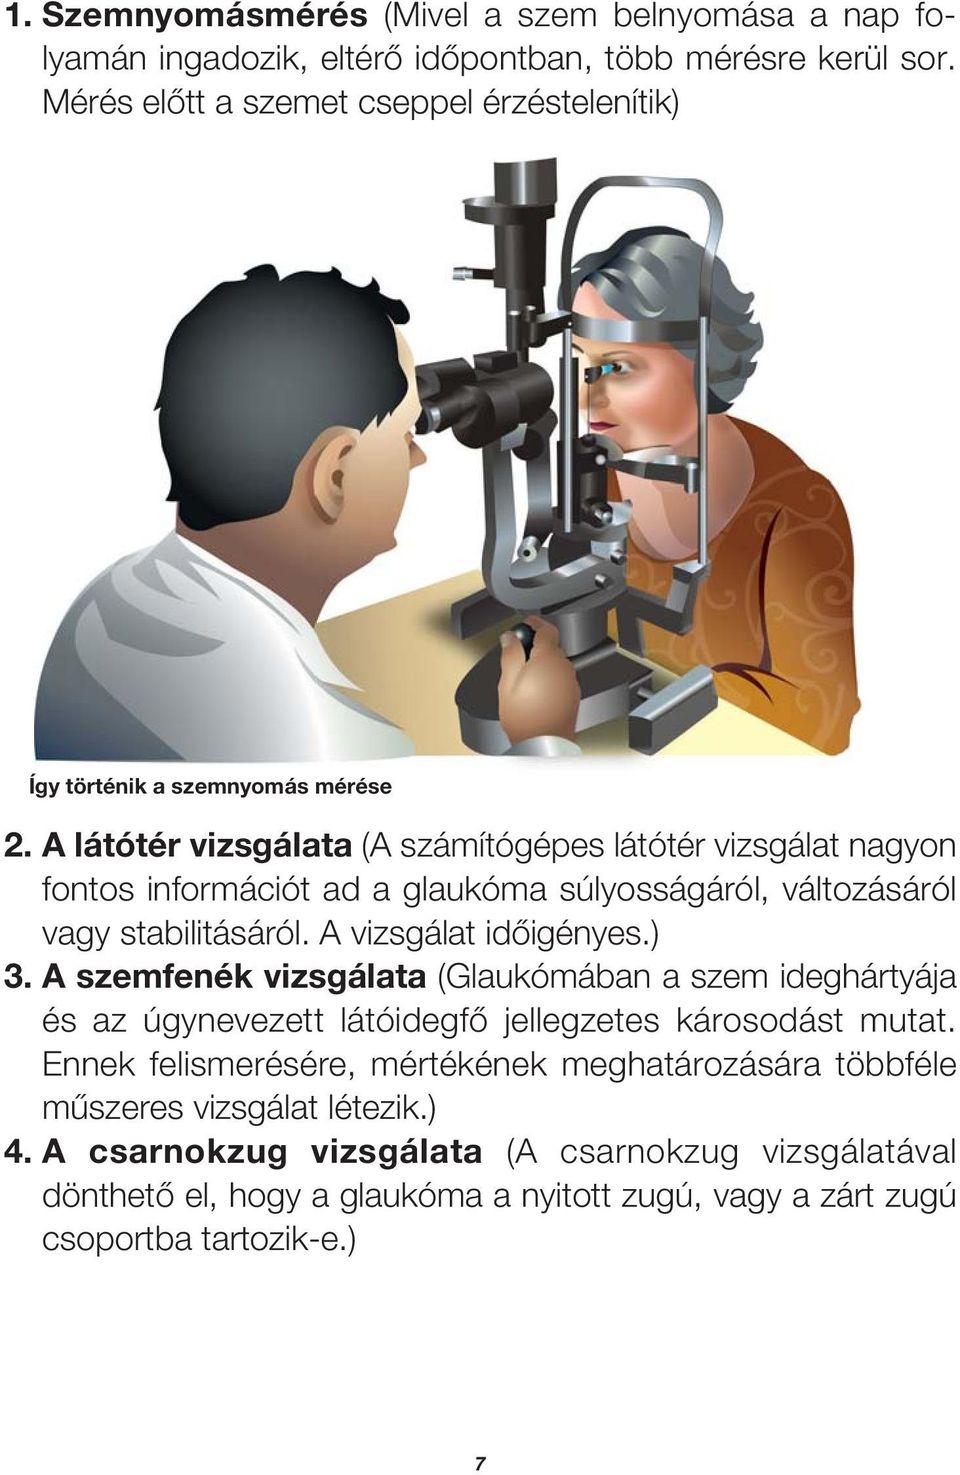 A látótér vizsgálata (A számítógépes látótér vizsgálat nagyon fontos információt ad a glaukóma súlyosságáról, változásáról vagy stabilitásáról. A vizsgálat idôigényes.) 3.